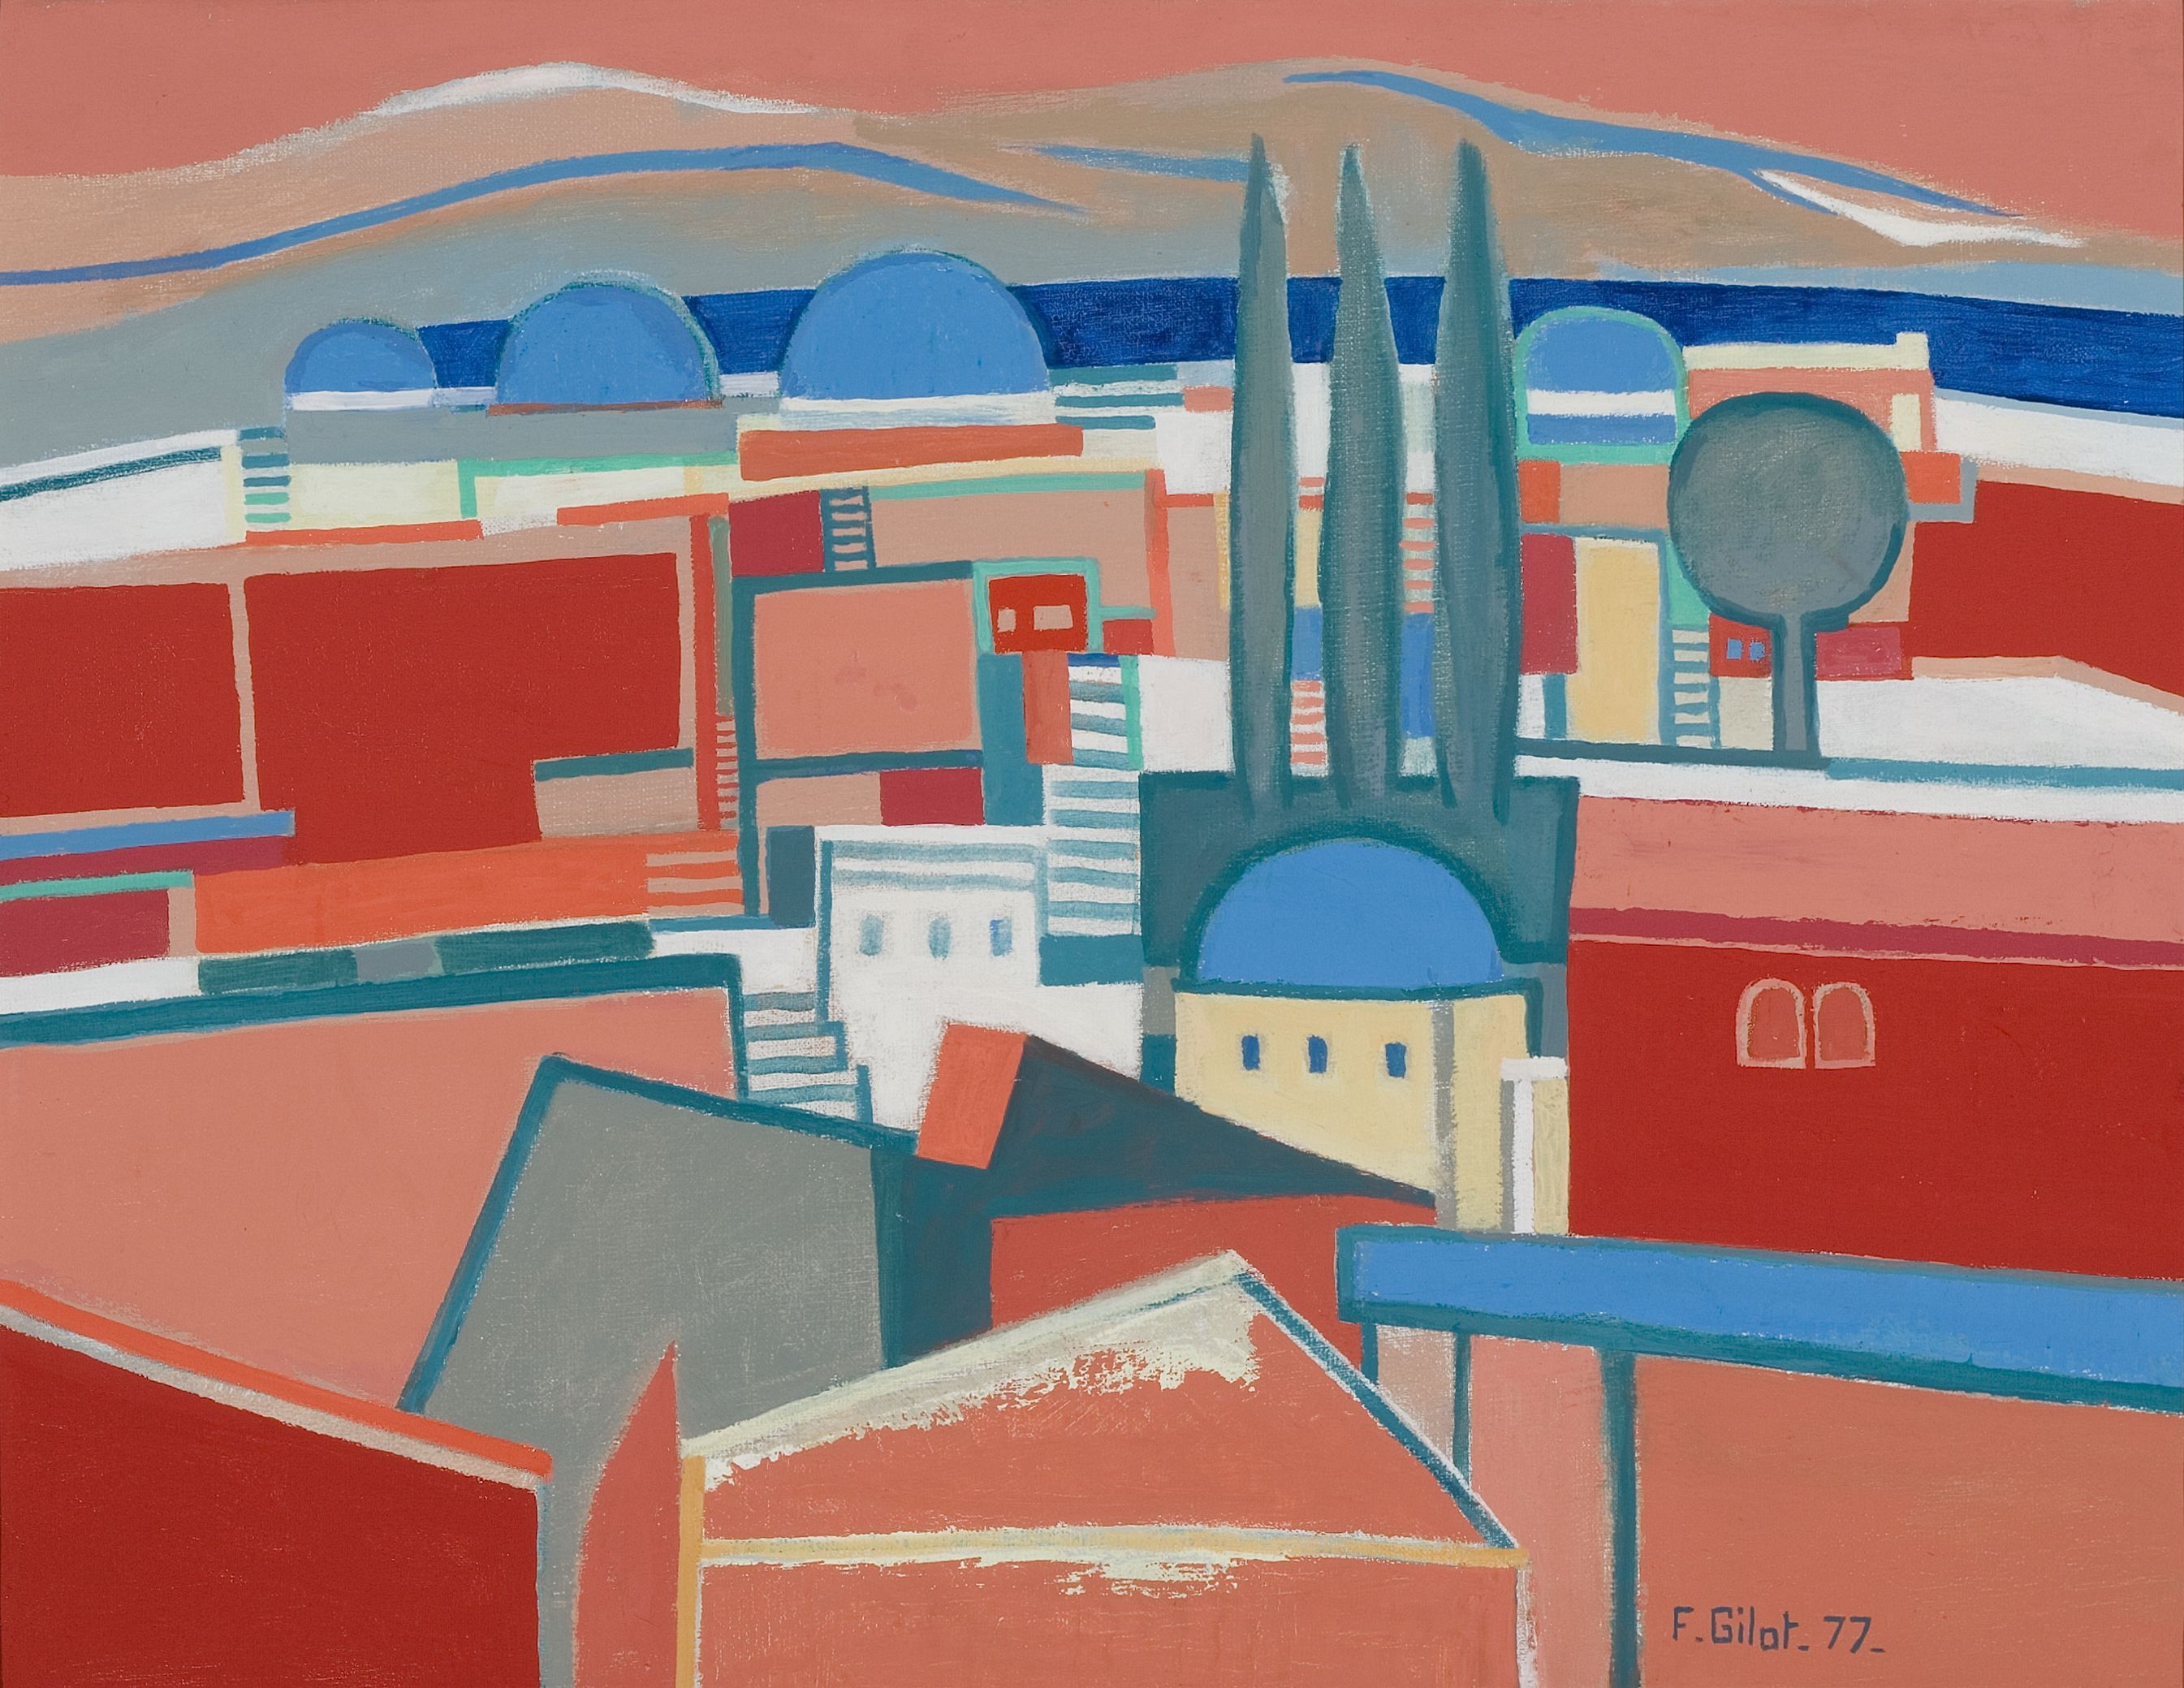 Françoise Gilot: Keleti város I. – 1977, olaj, vászon, 50 × 66 cm, magángyűjtemény